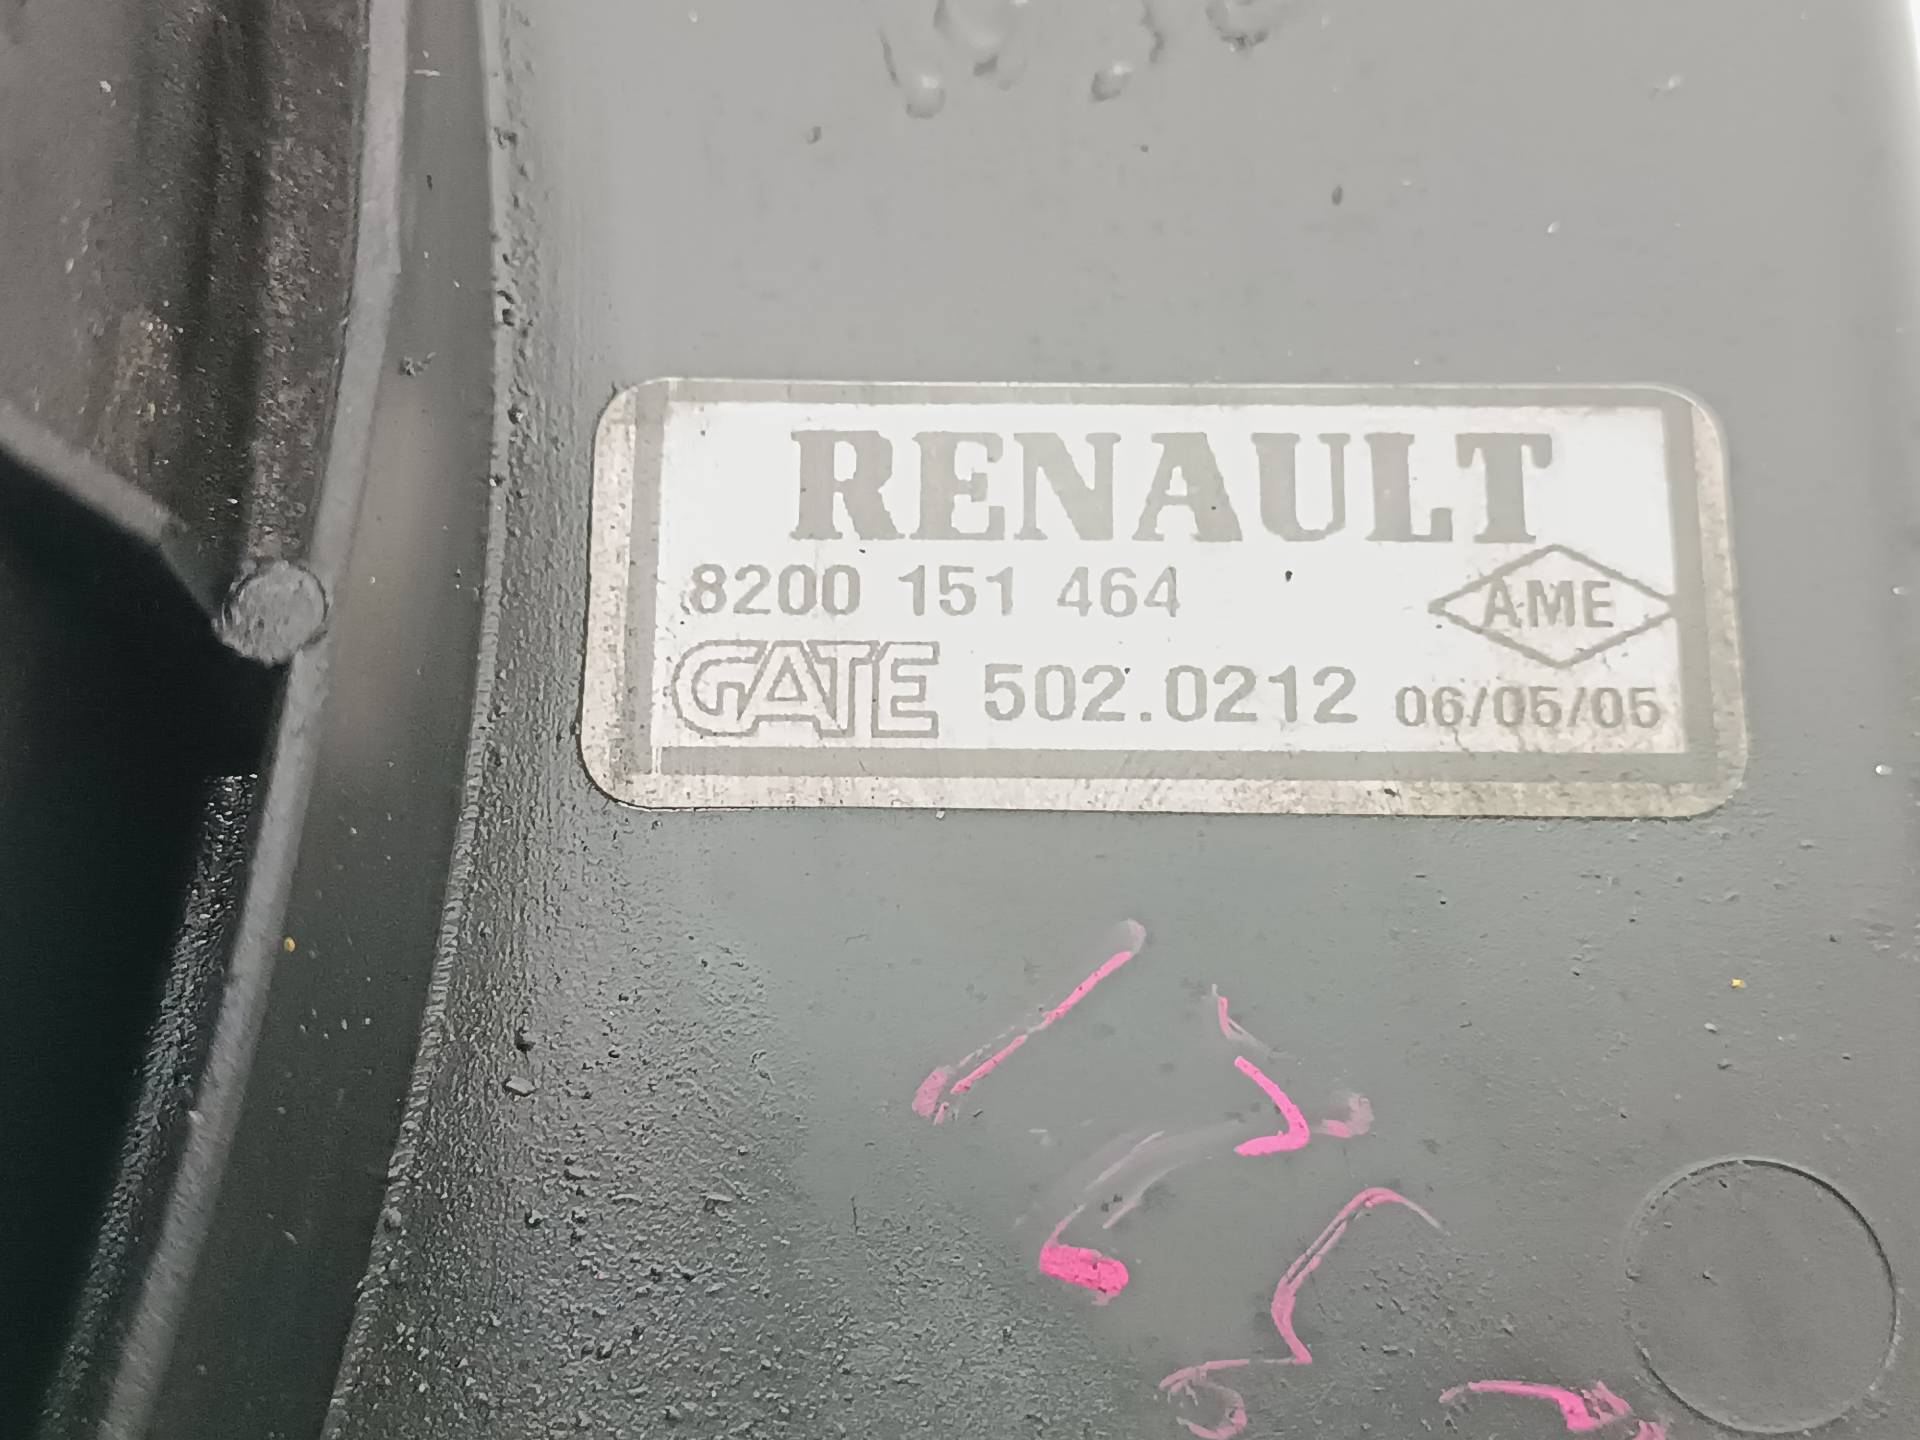 RENAULT Megane 2 generation (2002-2012) Difūzoriaus ventiliatorius 8200151464, 8200151464, 5020212 24582532